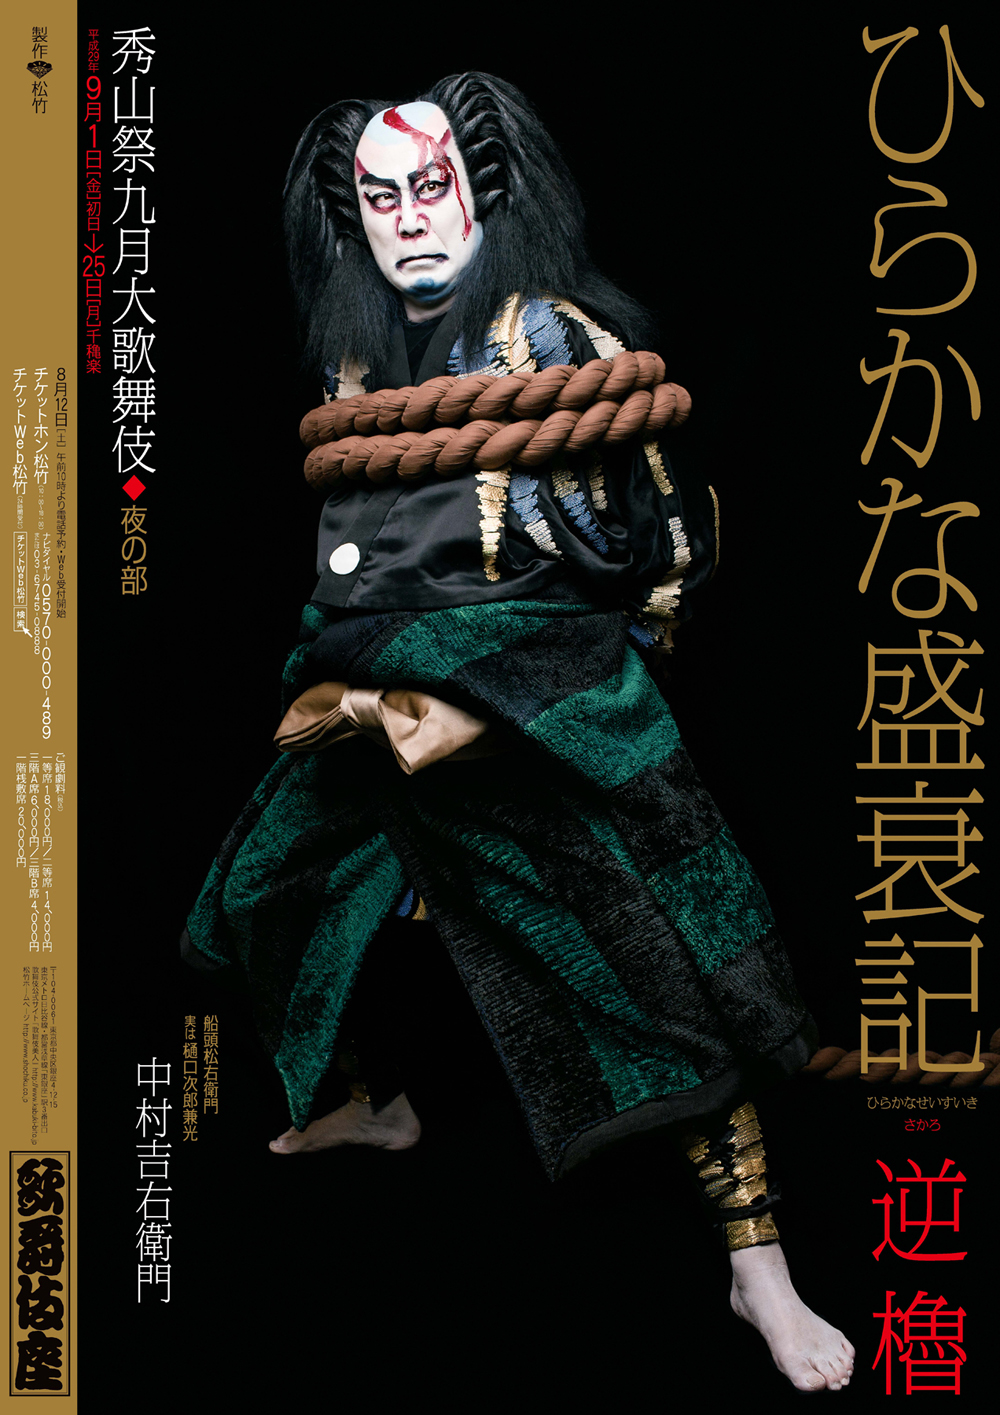 歌舞伎座「秀山祭九月大歌舞伎」特別ポスター公開